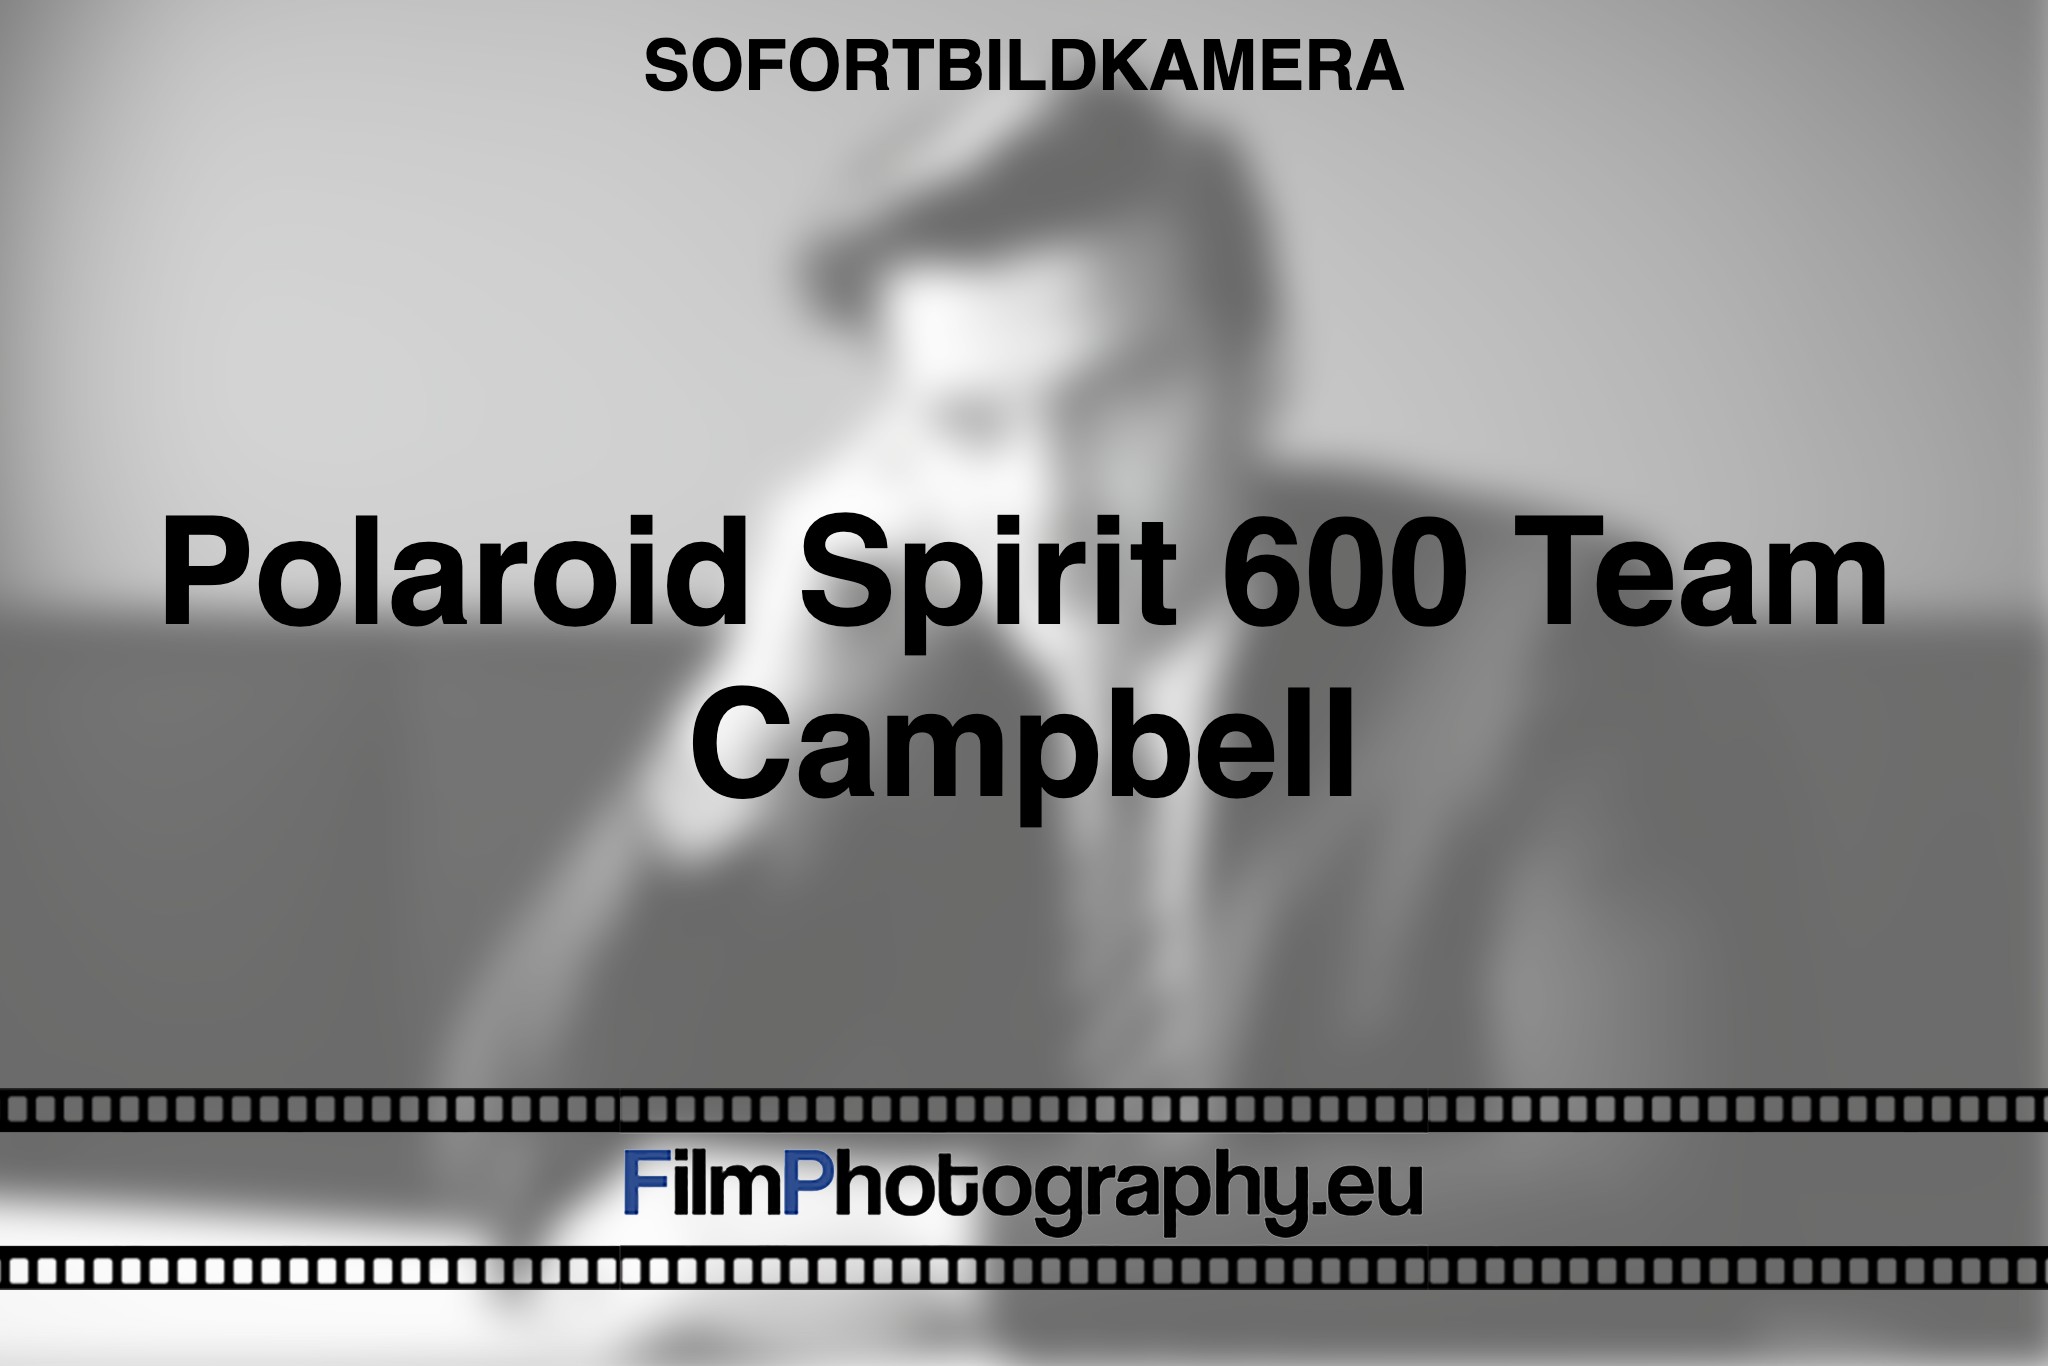 polaroid-spirit-600-team-campbell-sofortbildkamera-bnv